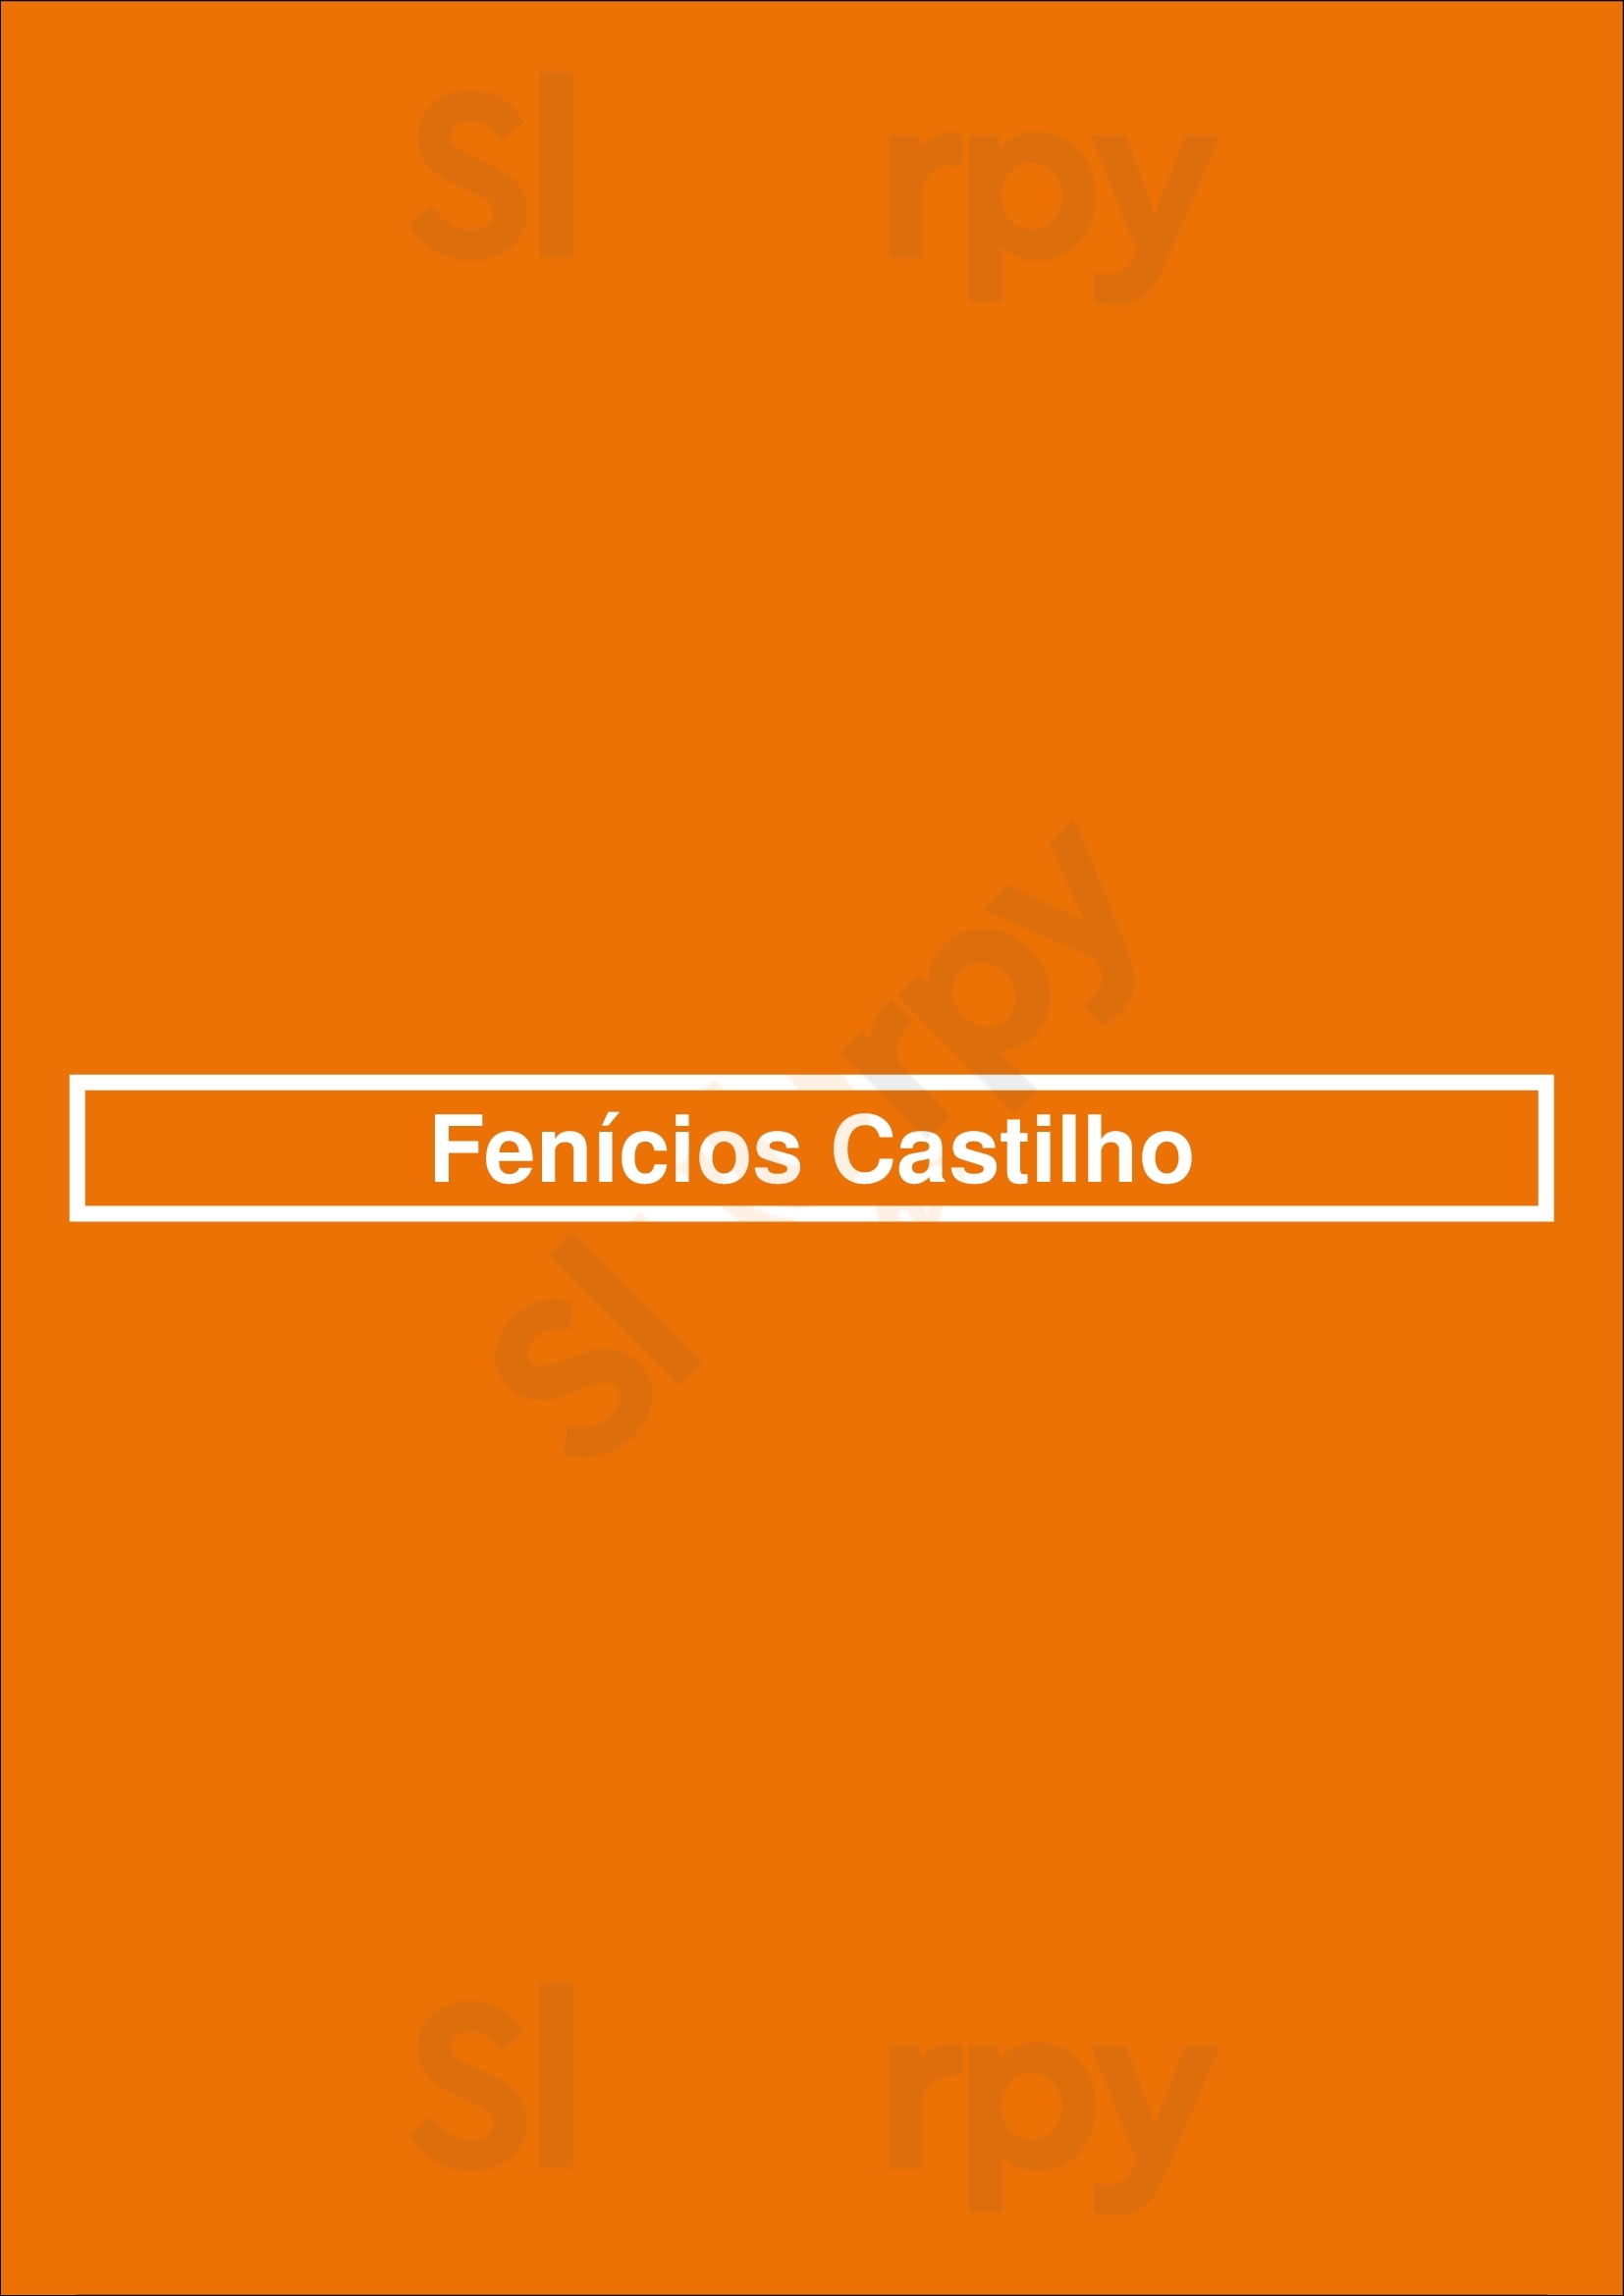 Fenícios Castilho Lisboa Menu - 1